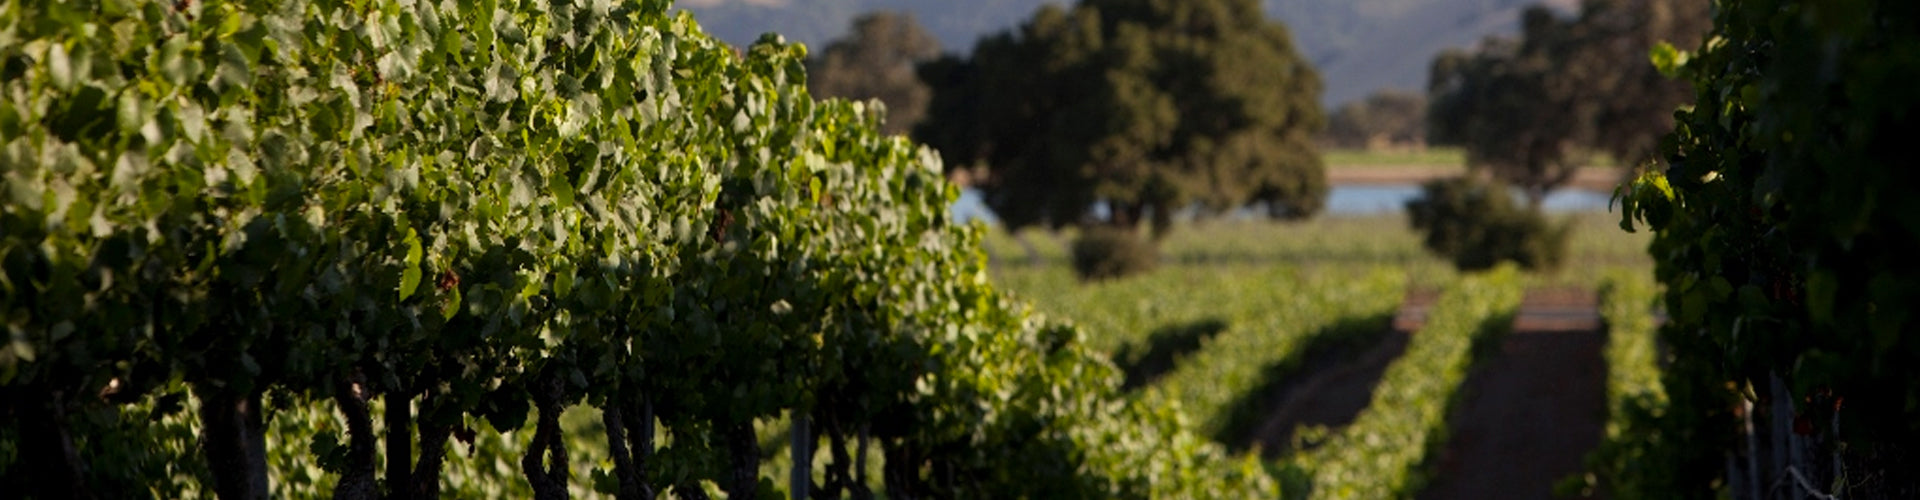 Lost Angel Wines Californian Vineyards